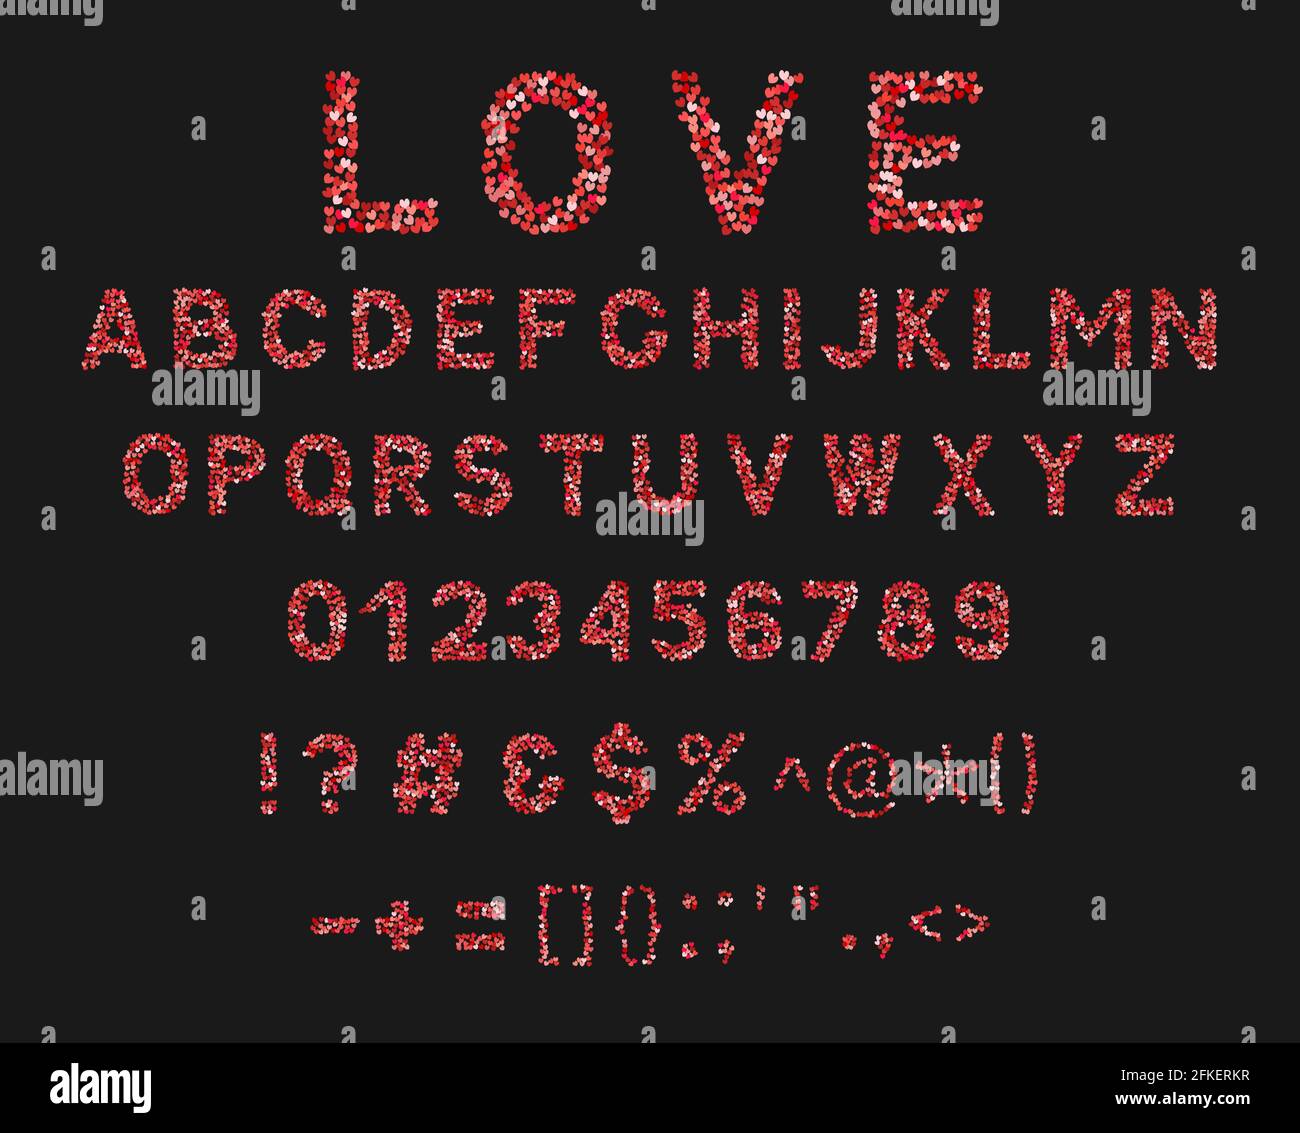 Amore alfabeto vettoriale. Lettere A-Z, numeri 0-9 e punteggiatura in tonalità di cuore di rosso e rosa. Carattere creativo per San Valentino. Latino upperca Illustrazione Vettoriale